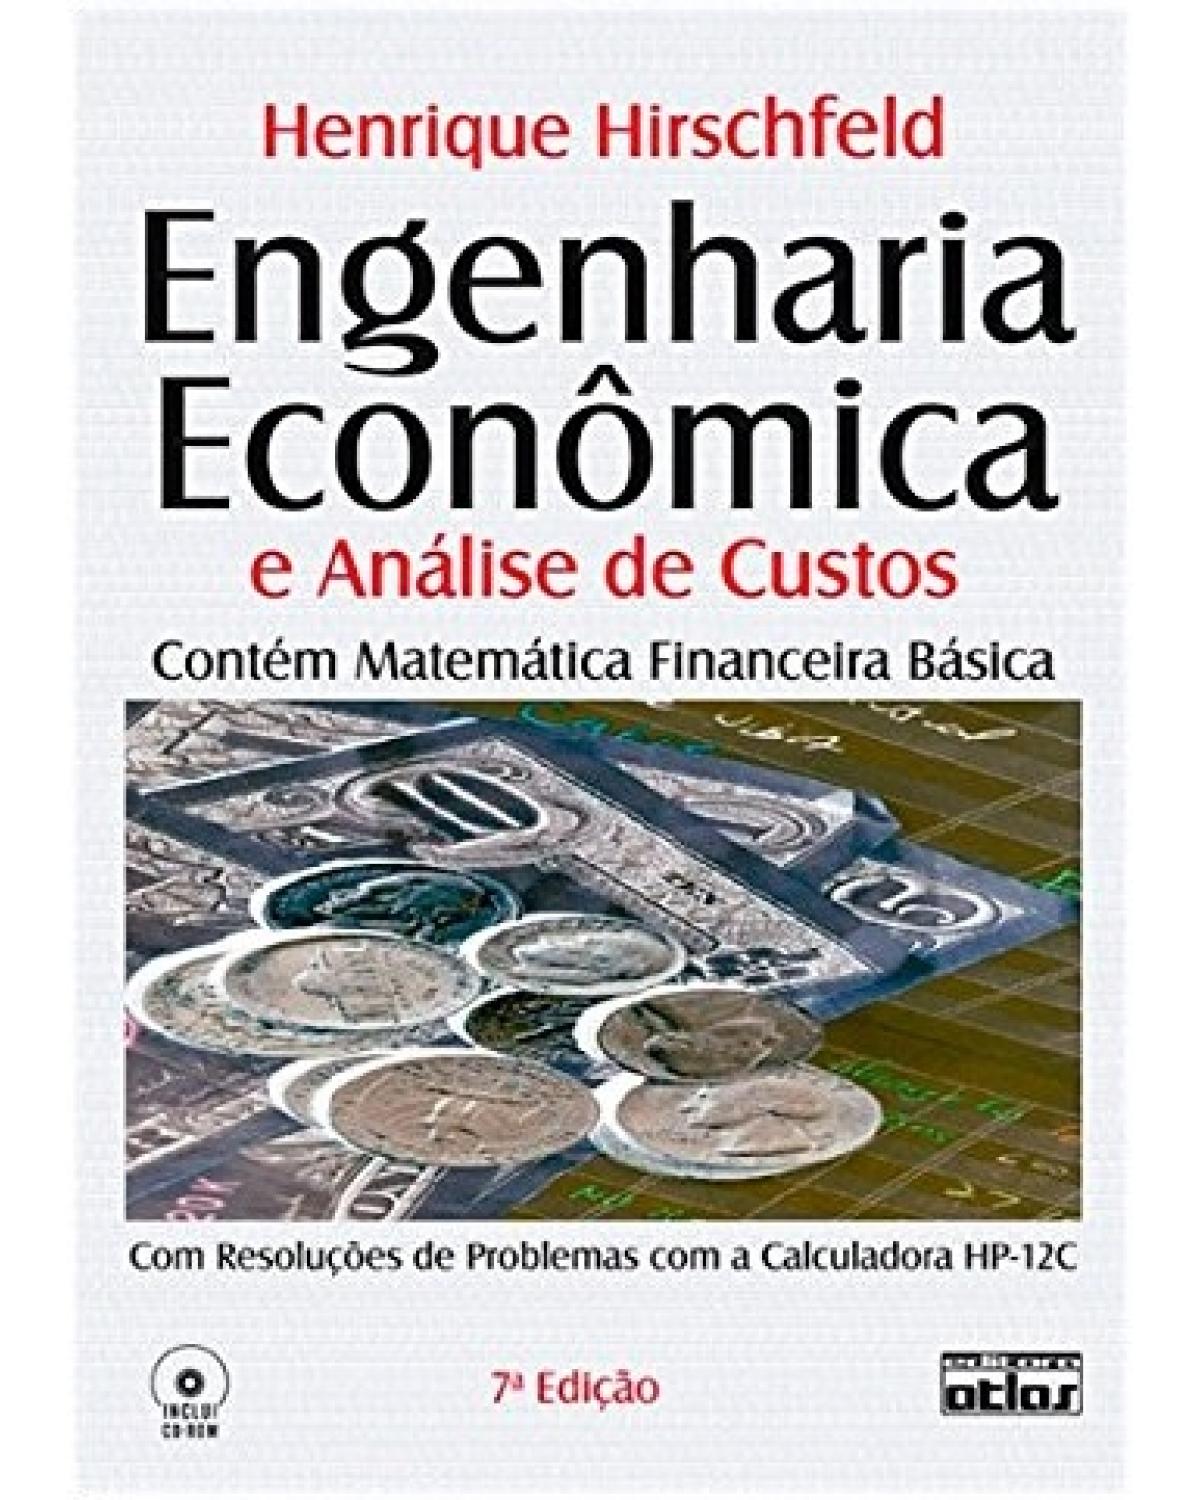 Engenharia econômica e análise de custos - Contém matemática financeira básica - Com resoluções de problemas com a calculadora HP-12C - 7ª Edição | 2000